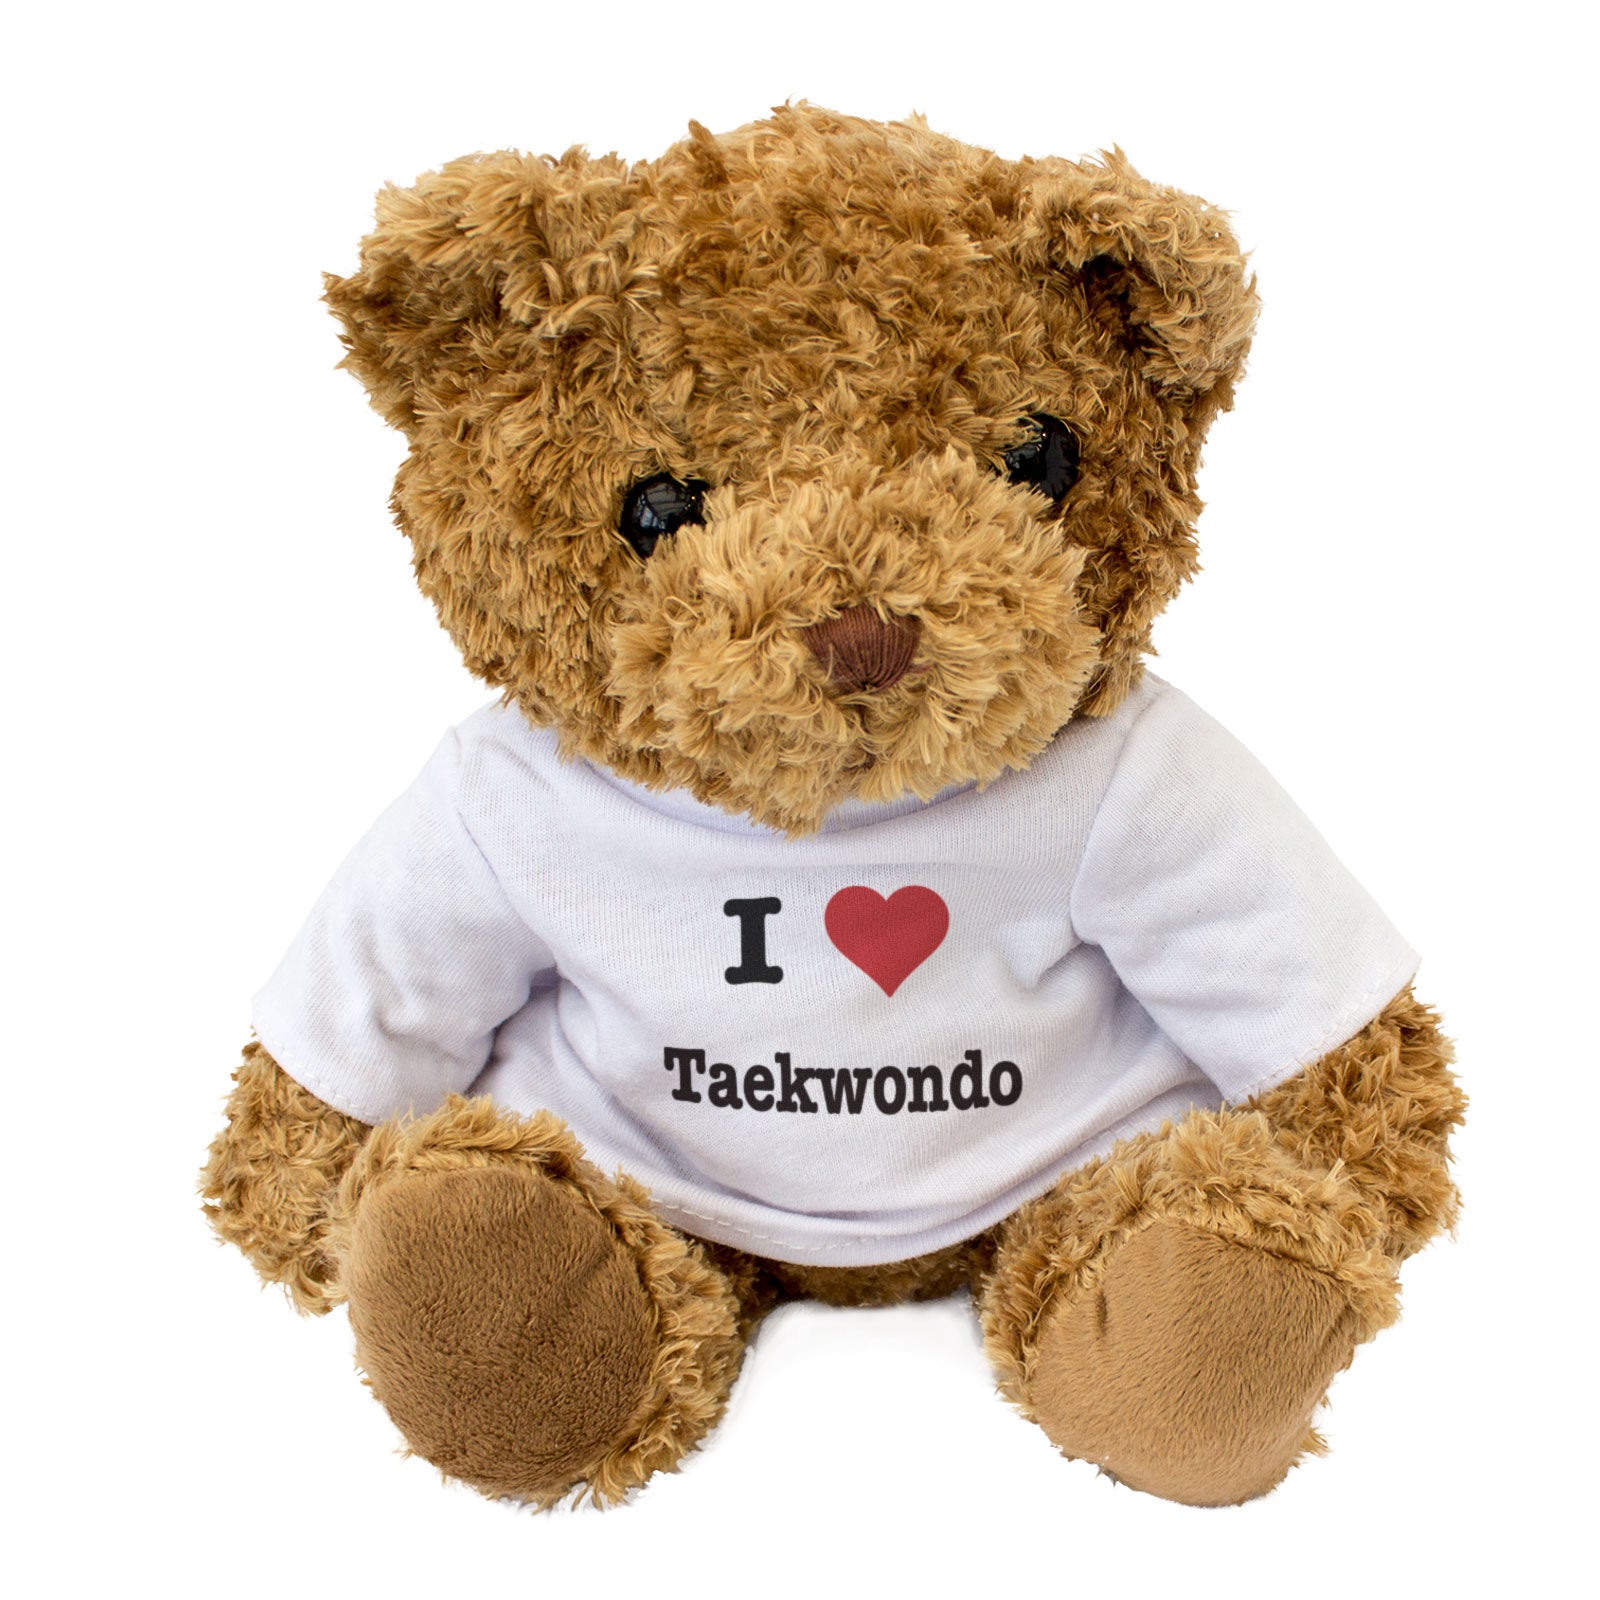 I Love Taekwondo - Teddy Bear